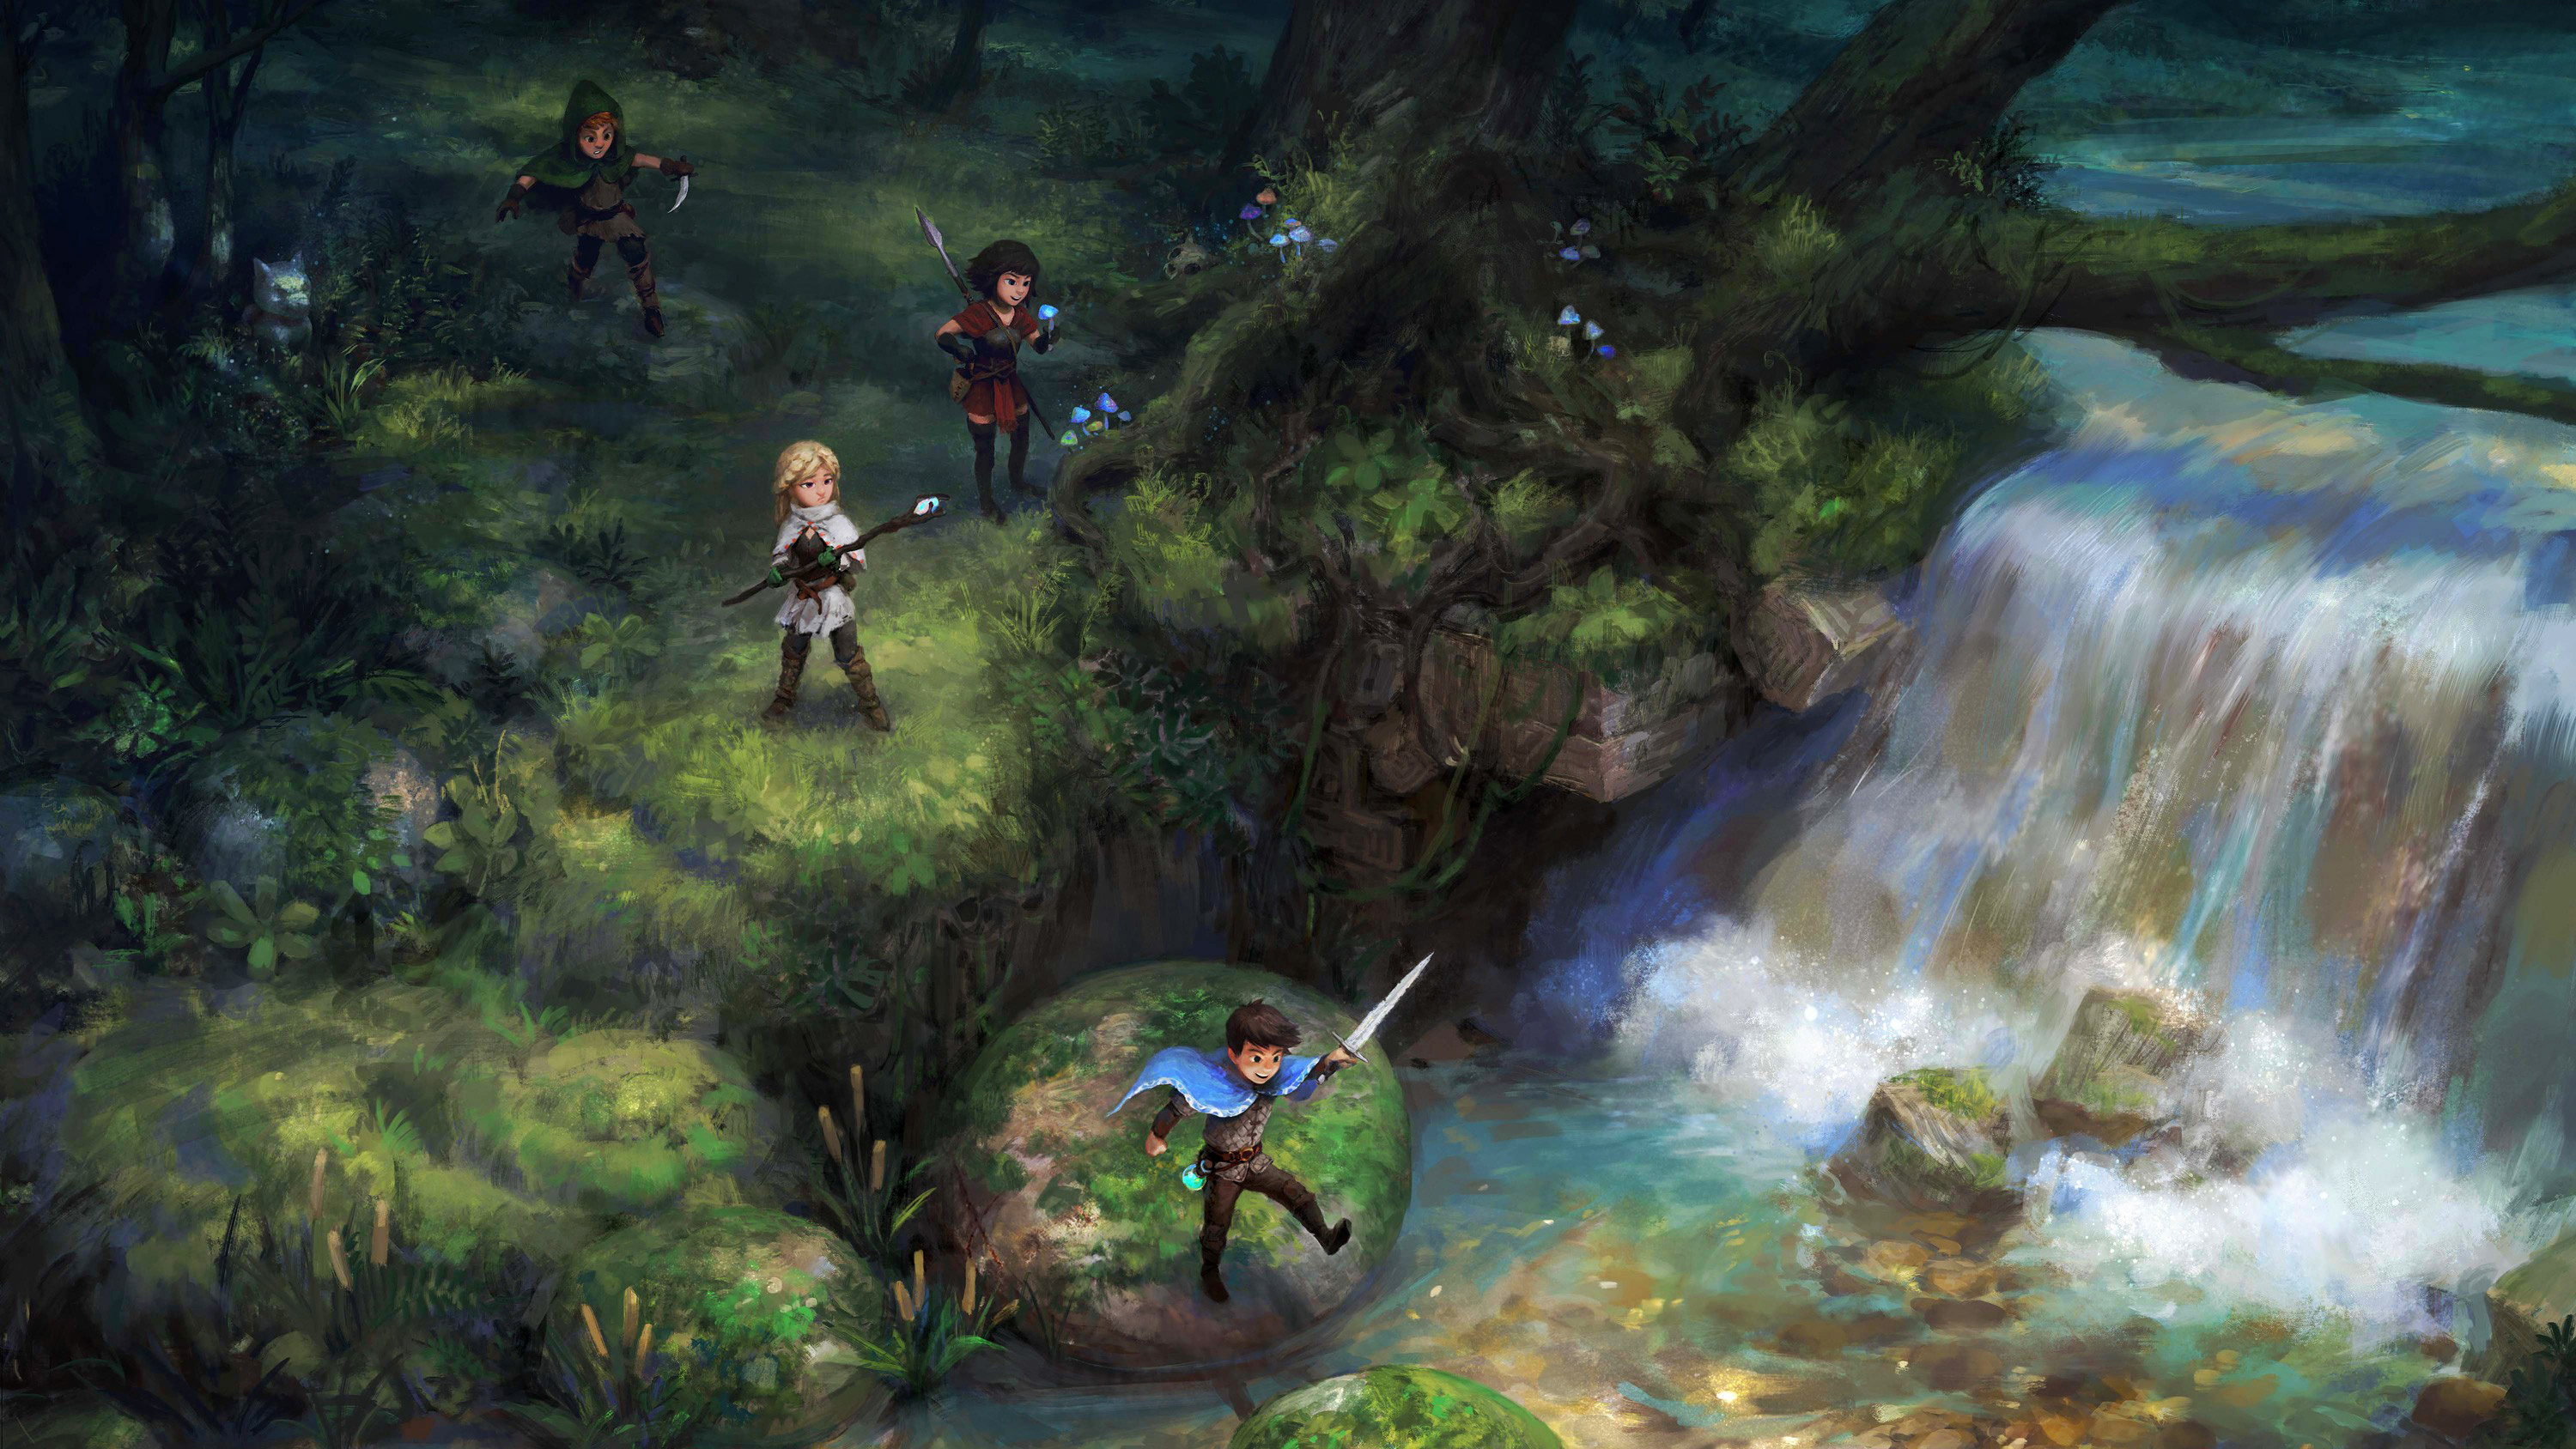 Jonathan Tiong Fantasy Art Artwork Digital Art Forest Waterfall Adventurers Children Sword Wand Spea 3000x1688